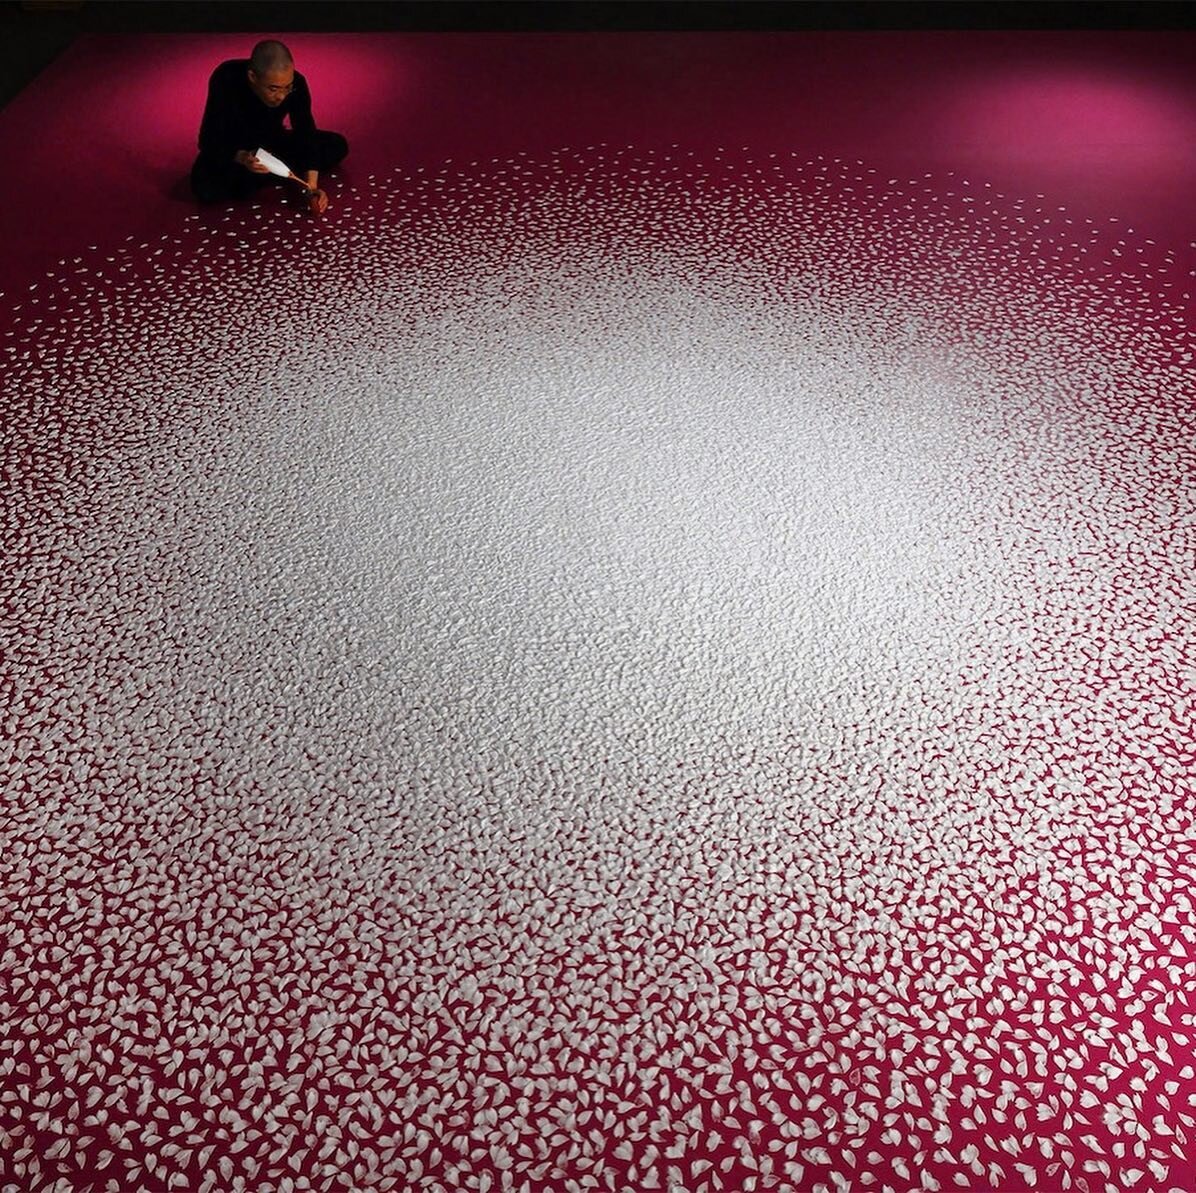 - さくらしべふる (Sakurashibefuru) [late spring]
: #art / #salt #installation: #motoiyamamoto 
:
: [@yamamotomotoi]
:
: at setouchi museum of art [#japan] 
:
:
:
#memory #space #time #invisible #visible #breathe #ephemeral #life #death #existential #earth #